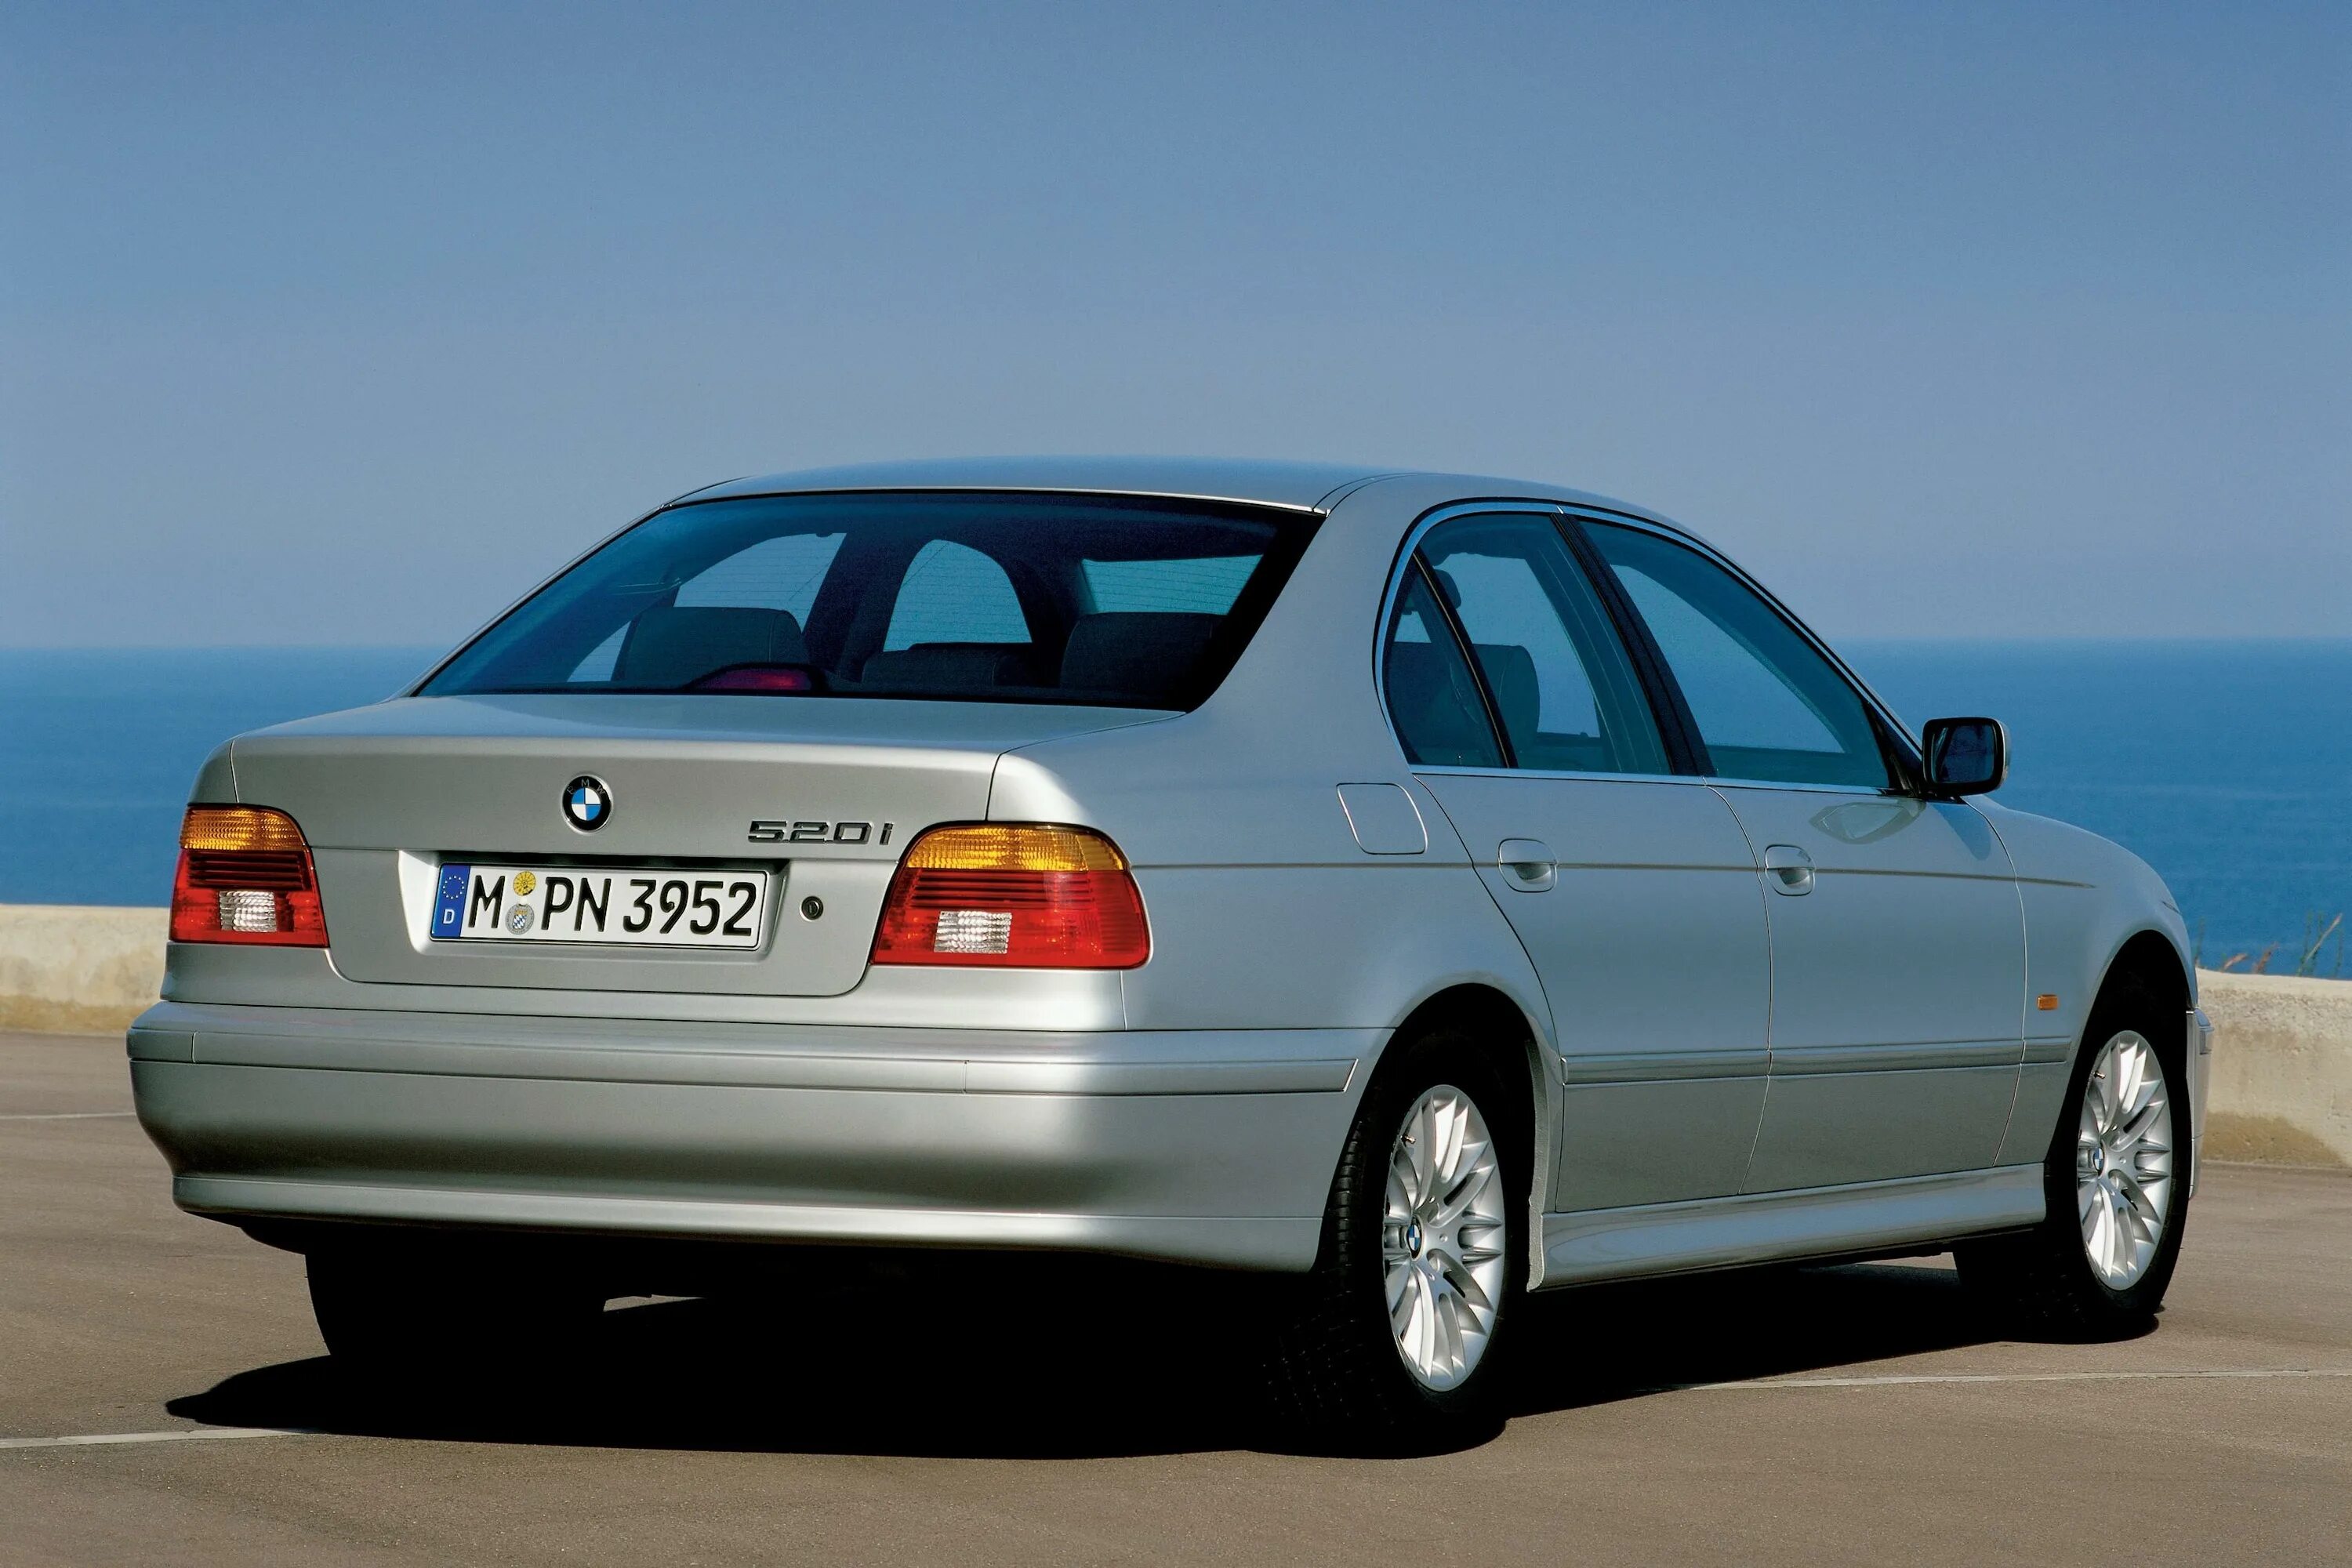 5 series e39. BMW 5 e39 2000. BMW 520i e39. BMW 520 e39. BMW e39 седан.